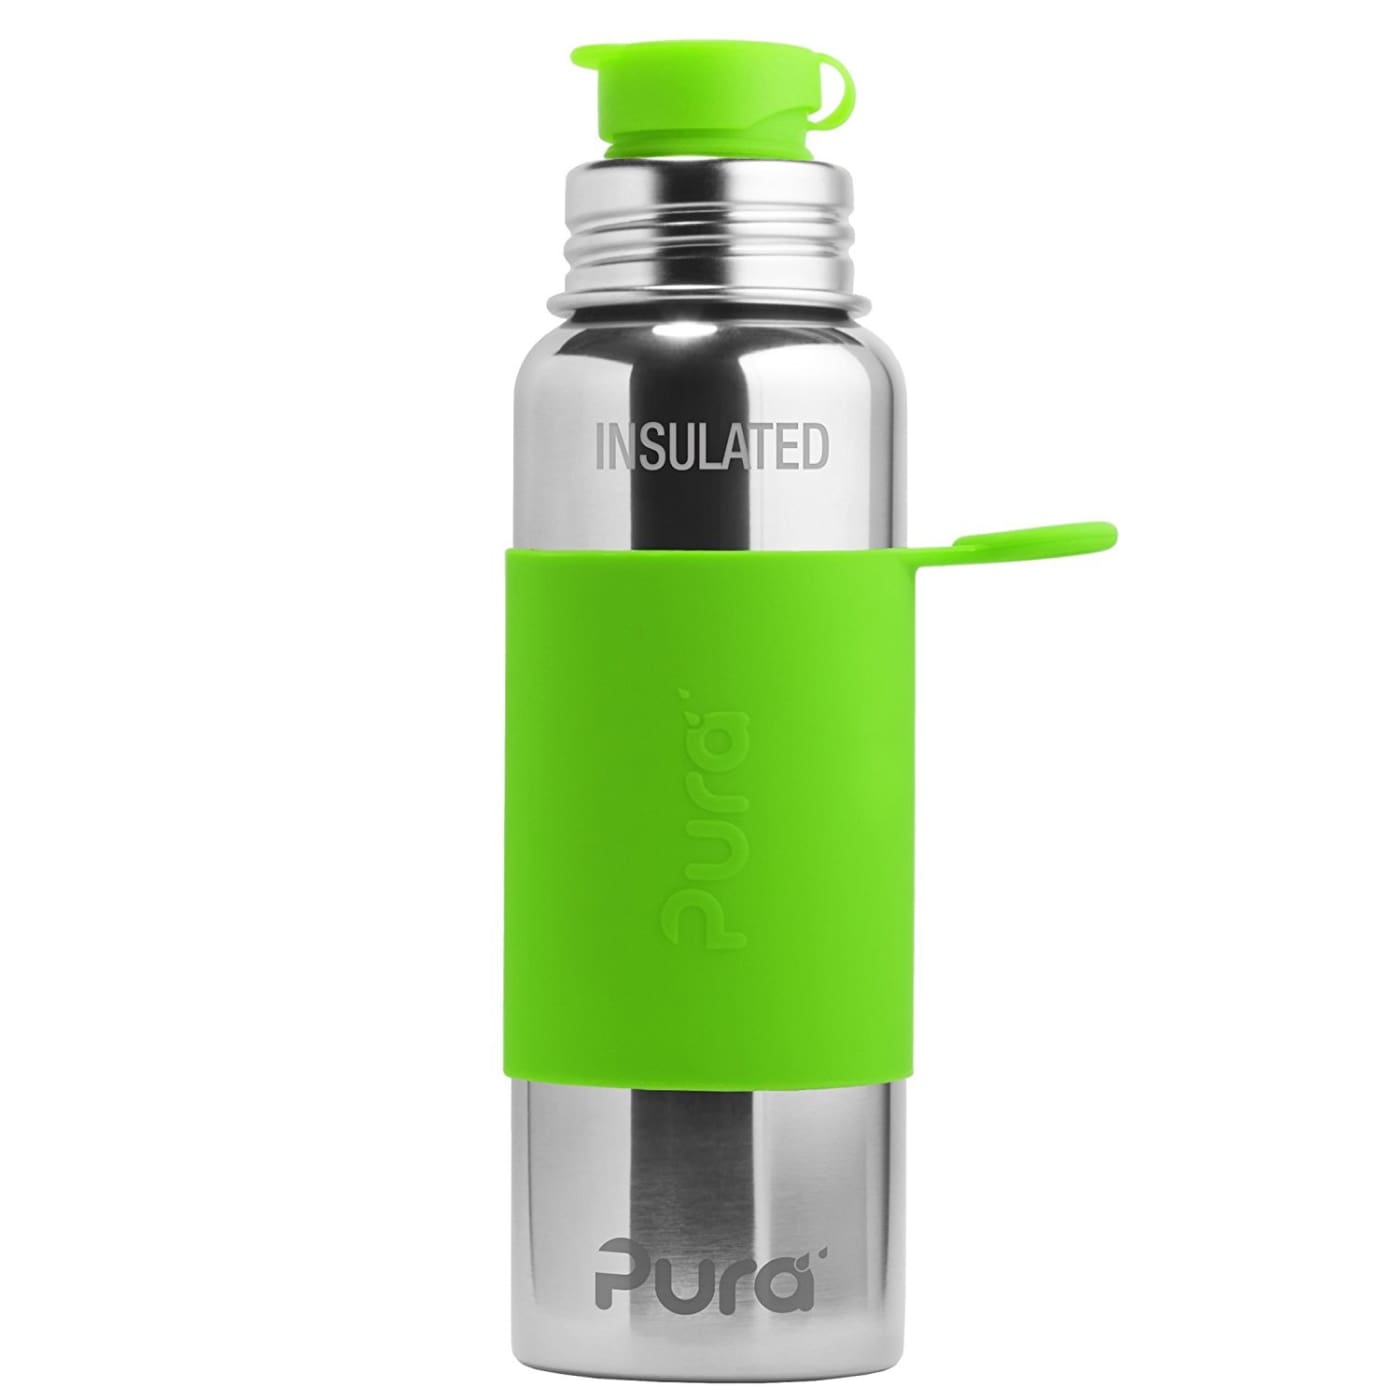 Pura Insulated Sport Stainless Steel Bottle - Green Sleeve 650ML - NURSING & FEEDING - ECO RANGE